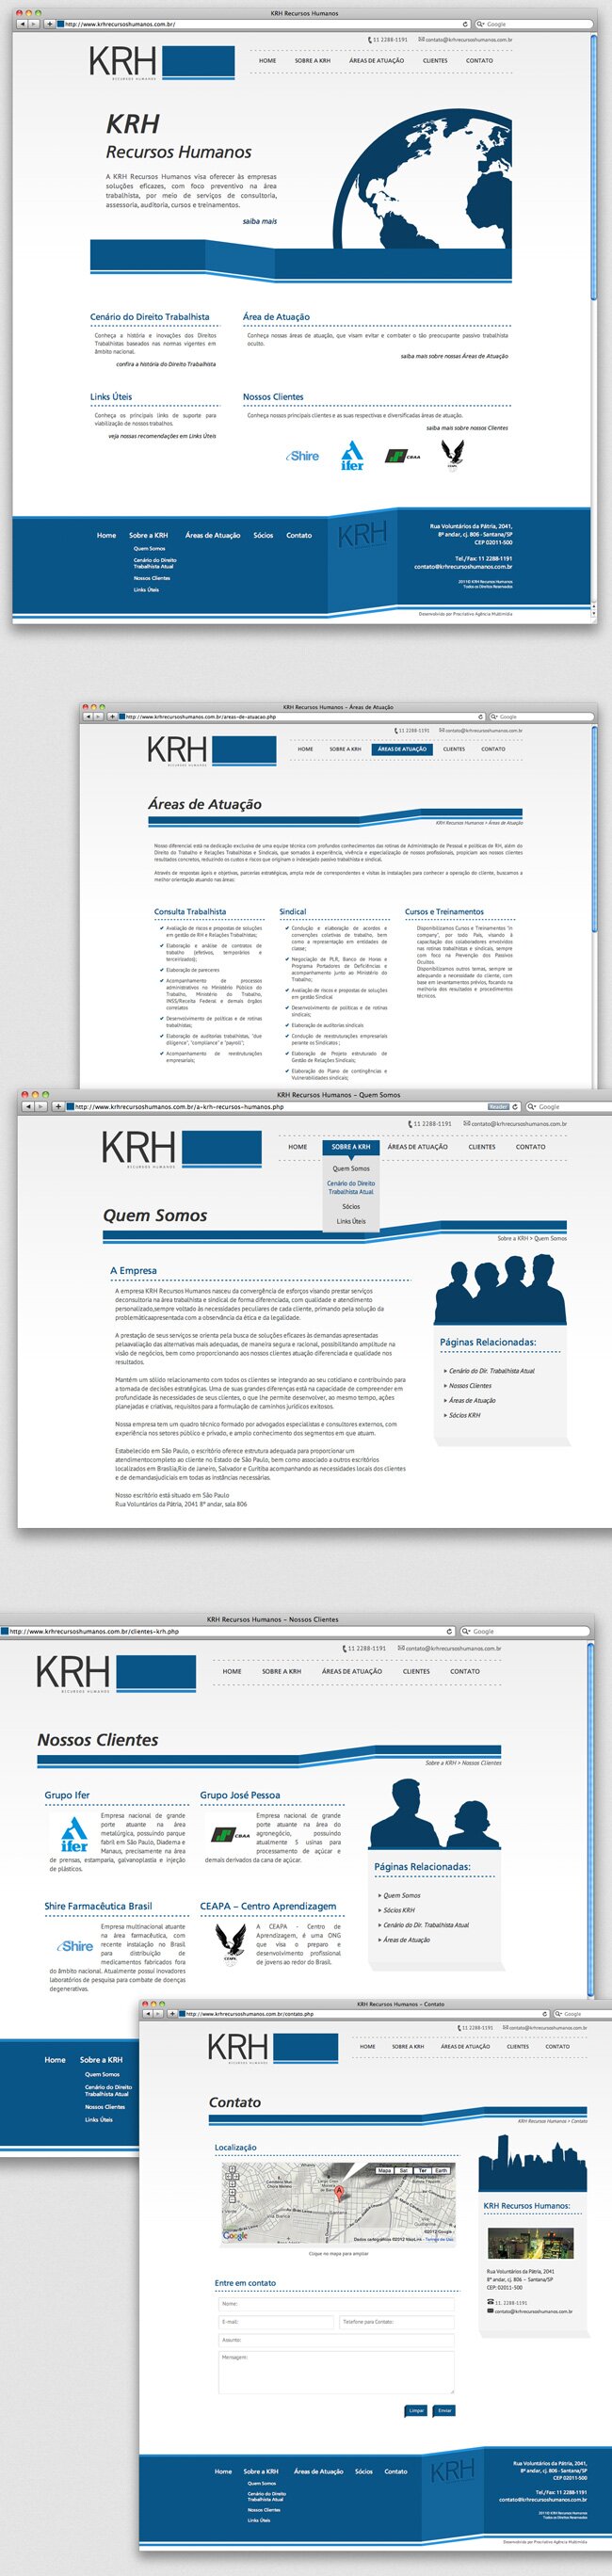 site-krh-recursos-humanos.jpg